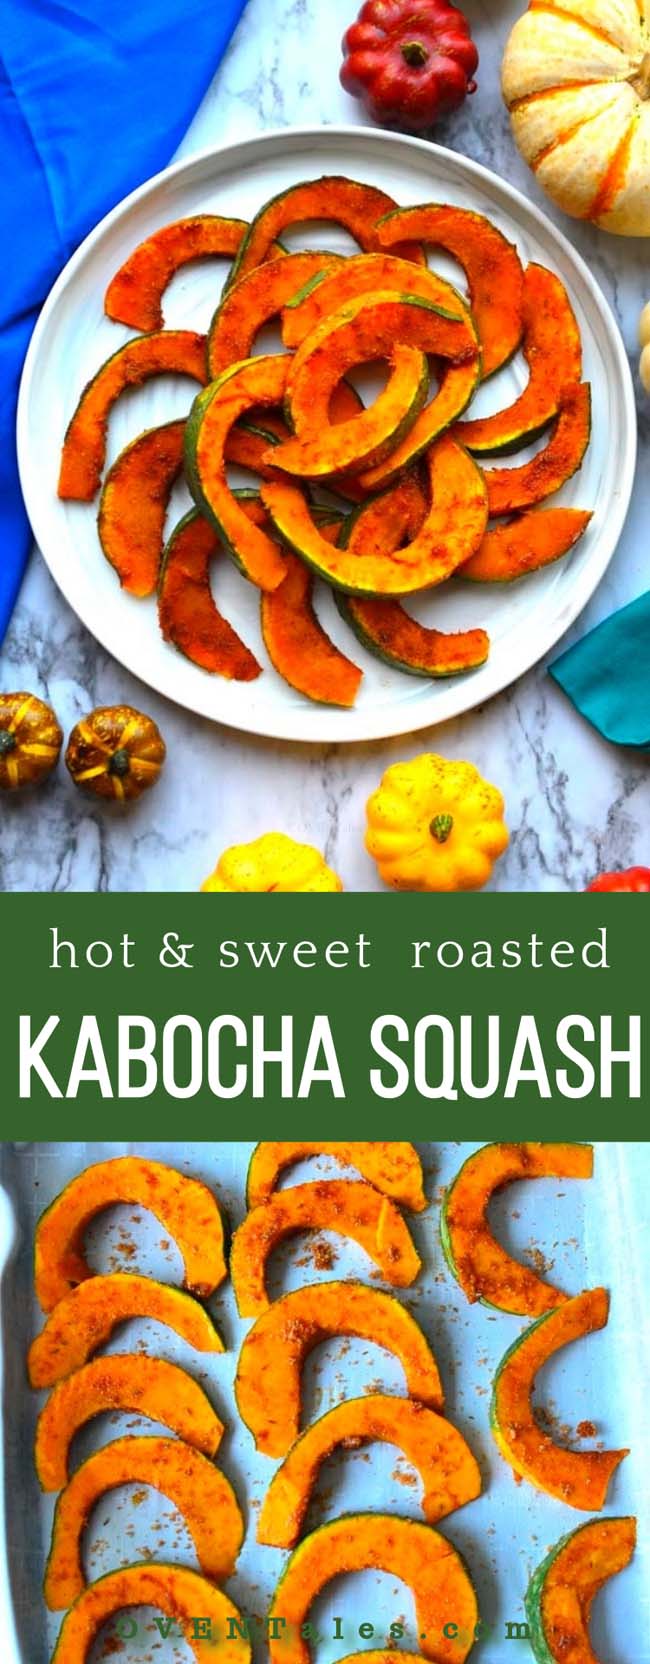 Hot And Sweet Roasted Kabocha squash